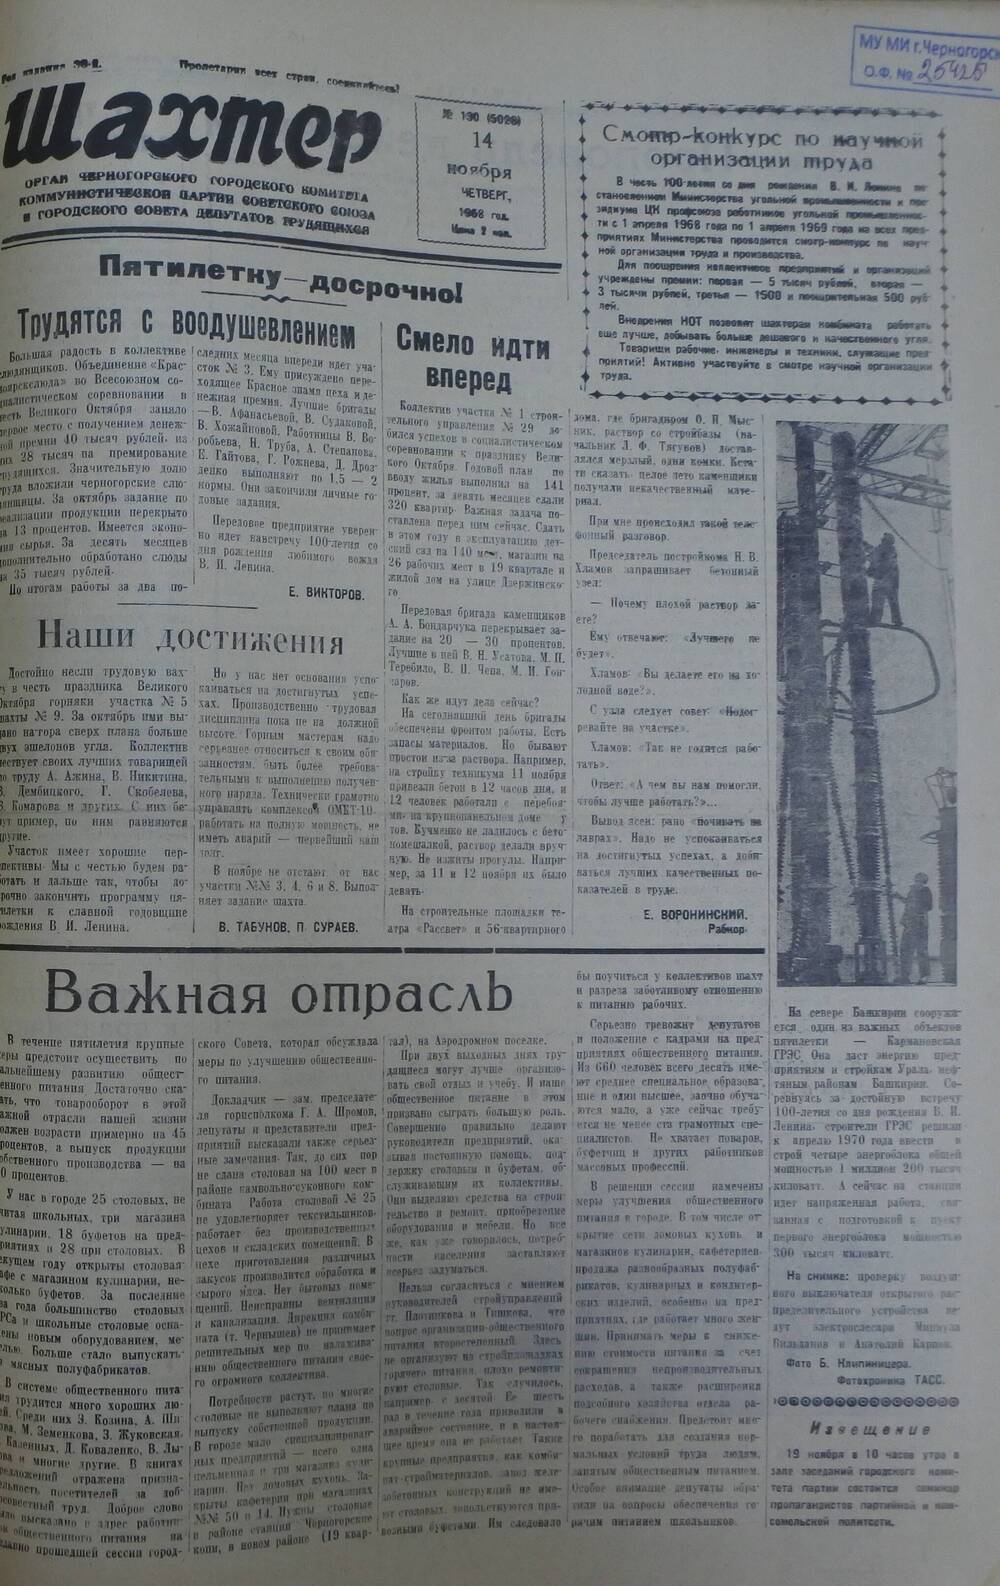 Газета «Шахтер». Выпуск № 130 от 14.11.1968 г.